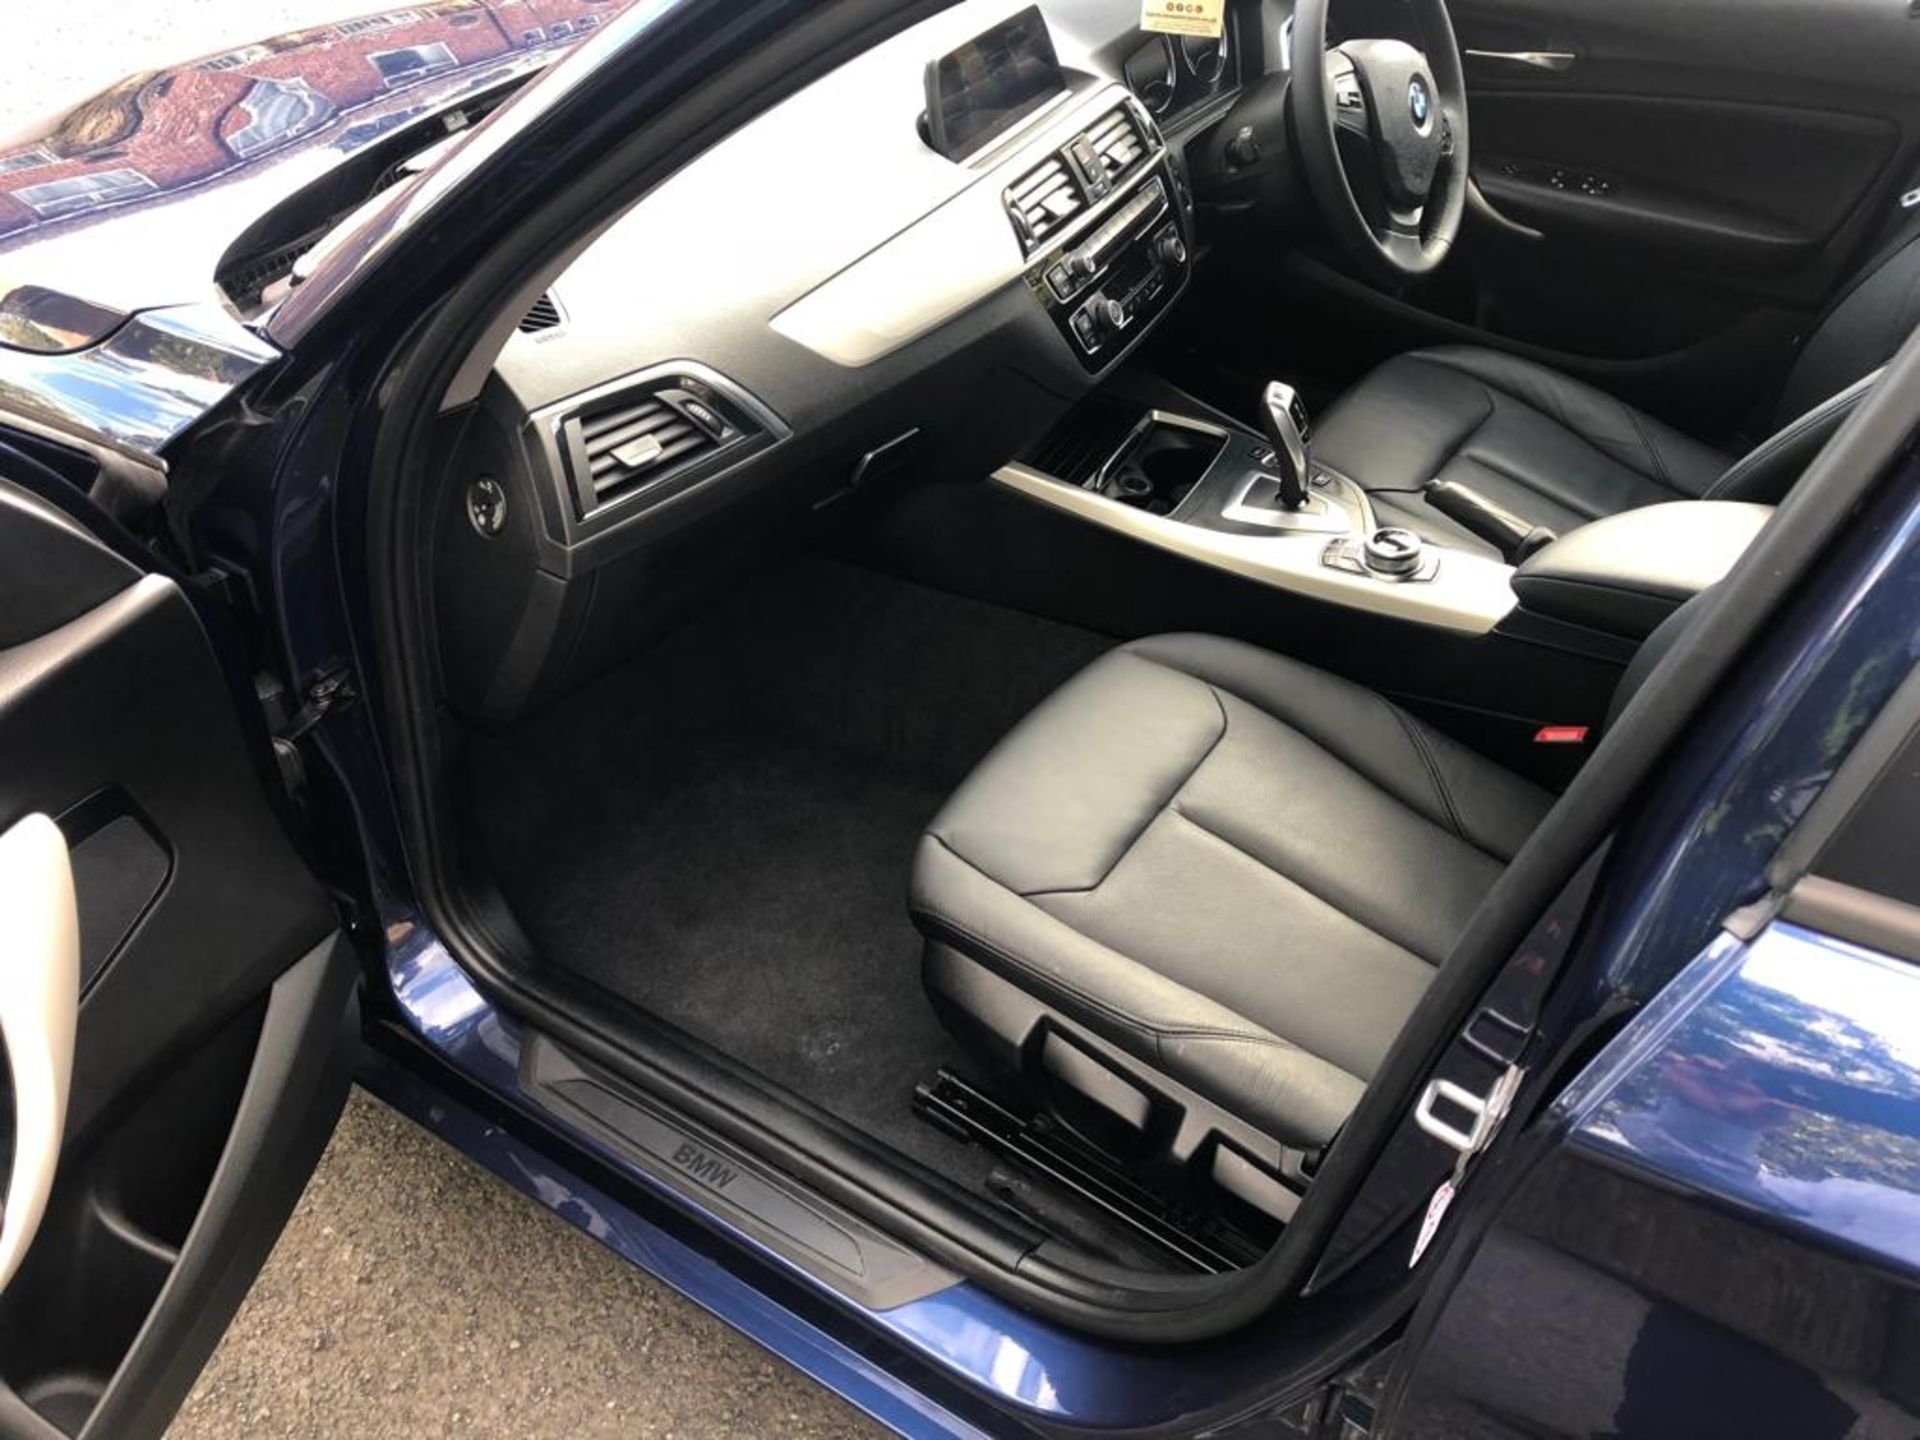 2018/67 REG BMW 118D SE AUTOMATIC BLUE DIESEL 5 DOOR HATCHBACK, SHOWING 0 FORMER KEEPERS *PLUS VAT* - Image 13 of 18